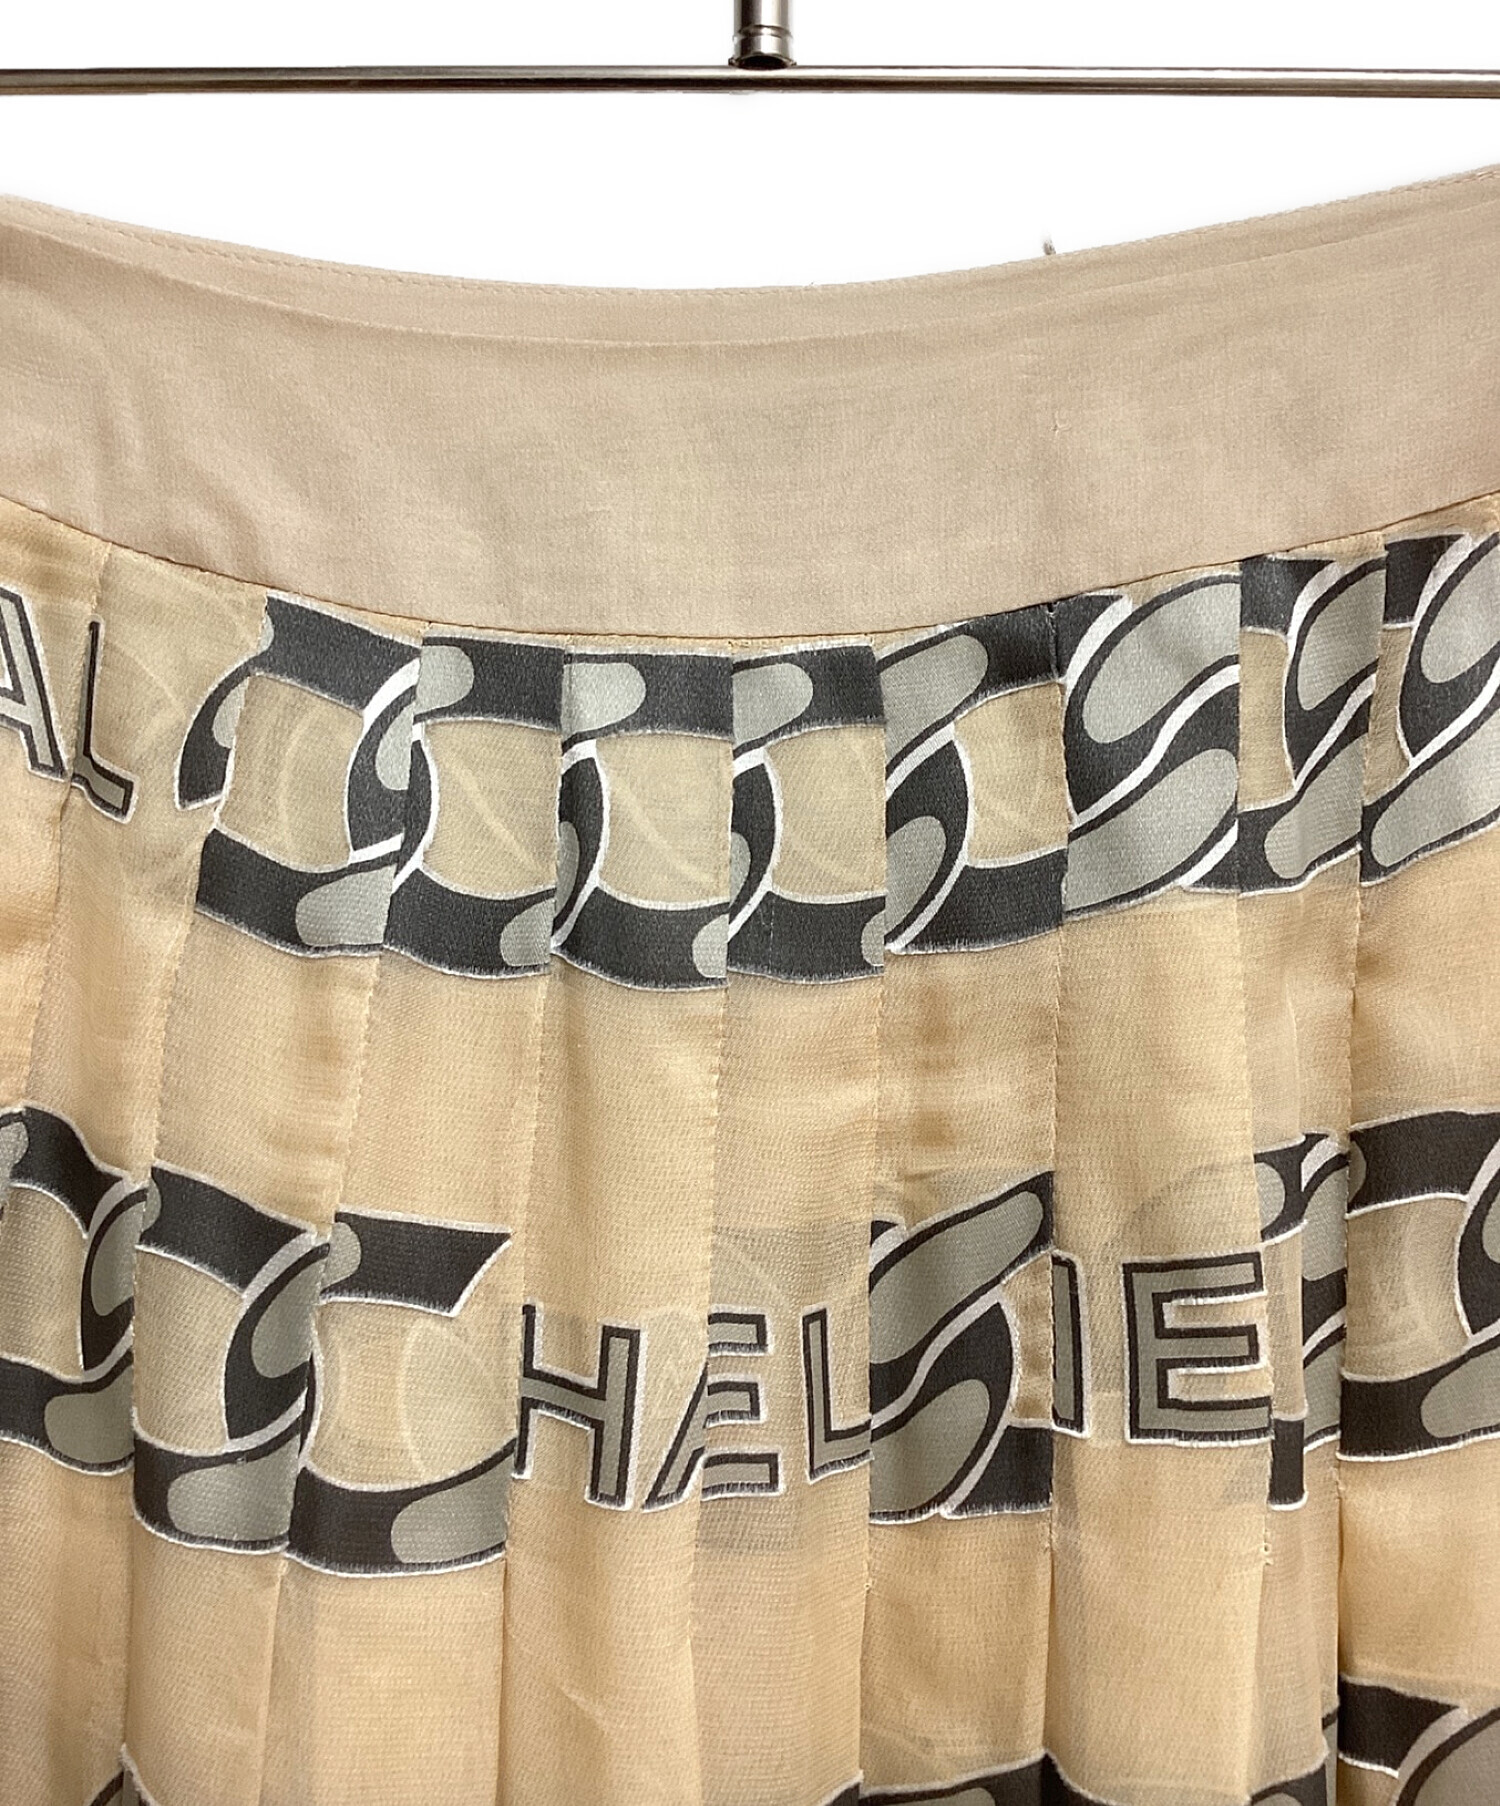 CHANEL (シャネル) logo chain pleated skirt（ロゴチェーンプリーツスカート） ベージュ サイズ:40